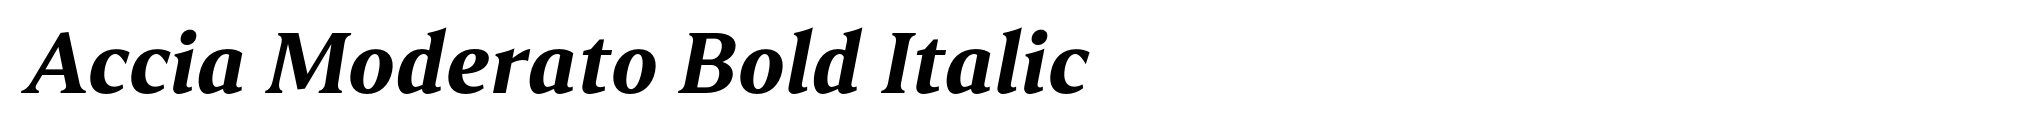 Accia Moderato Bold Italic image